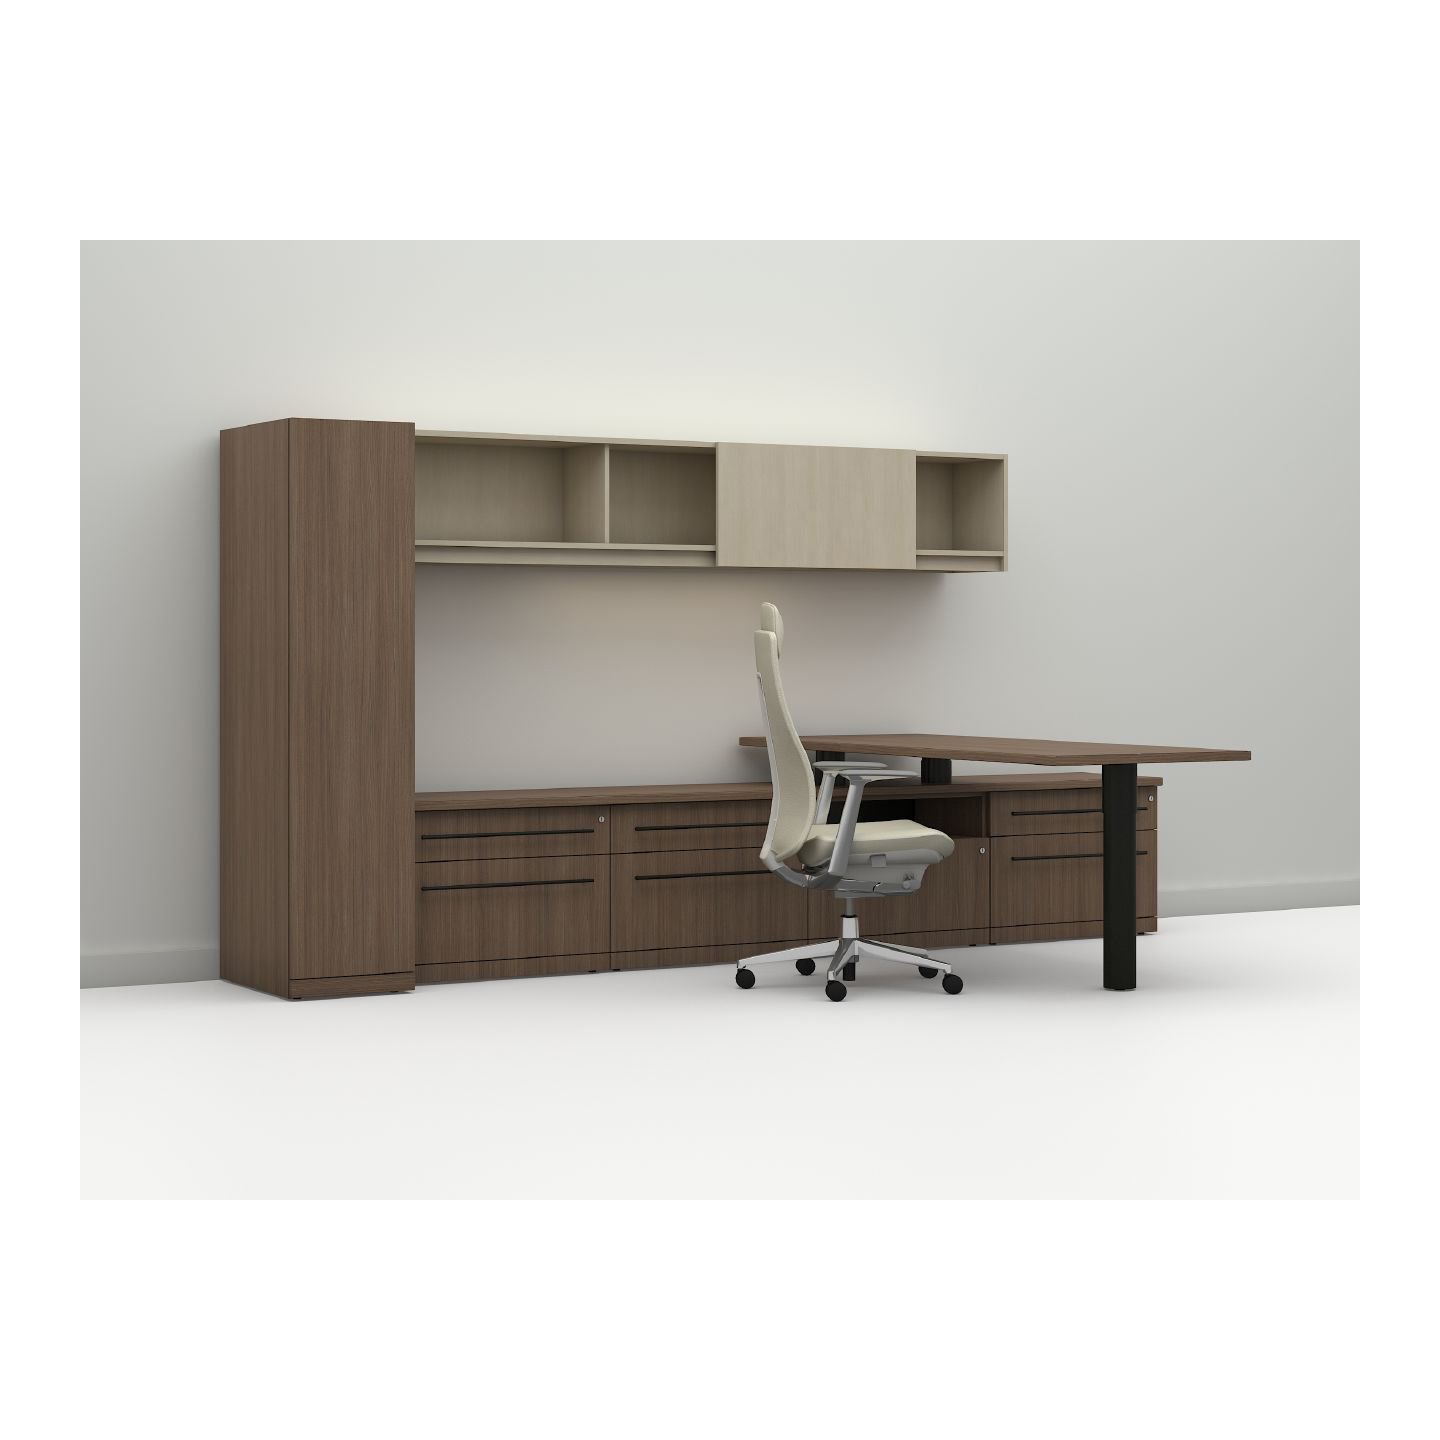 Haworth HW022 Office Furniture Key